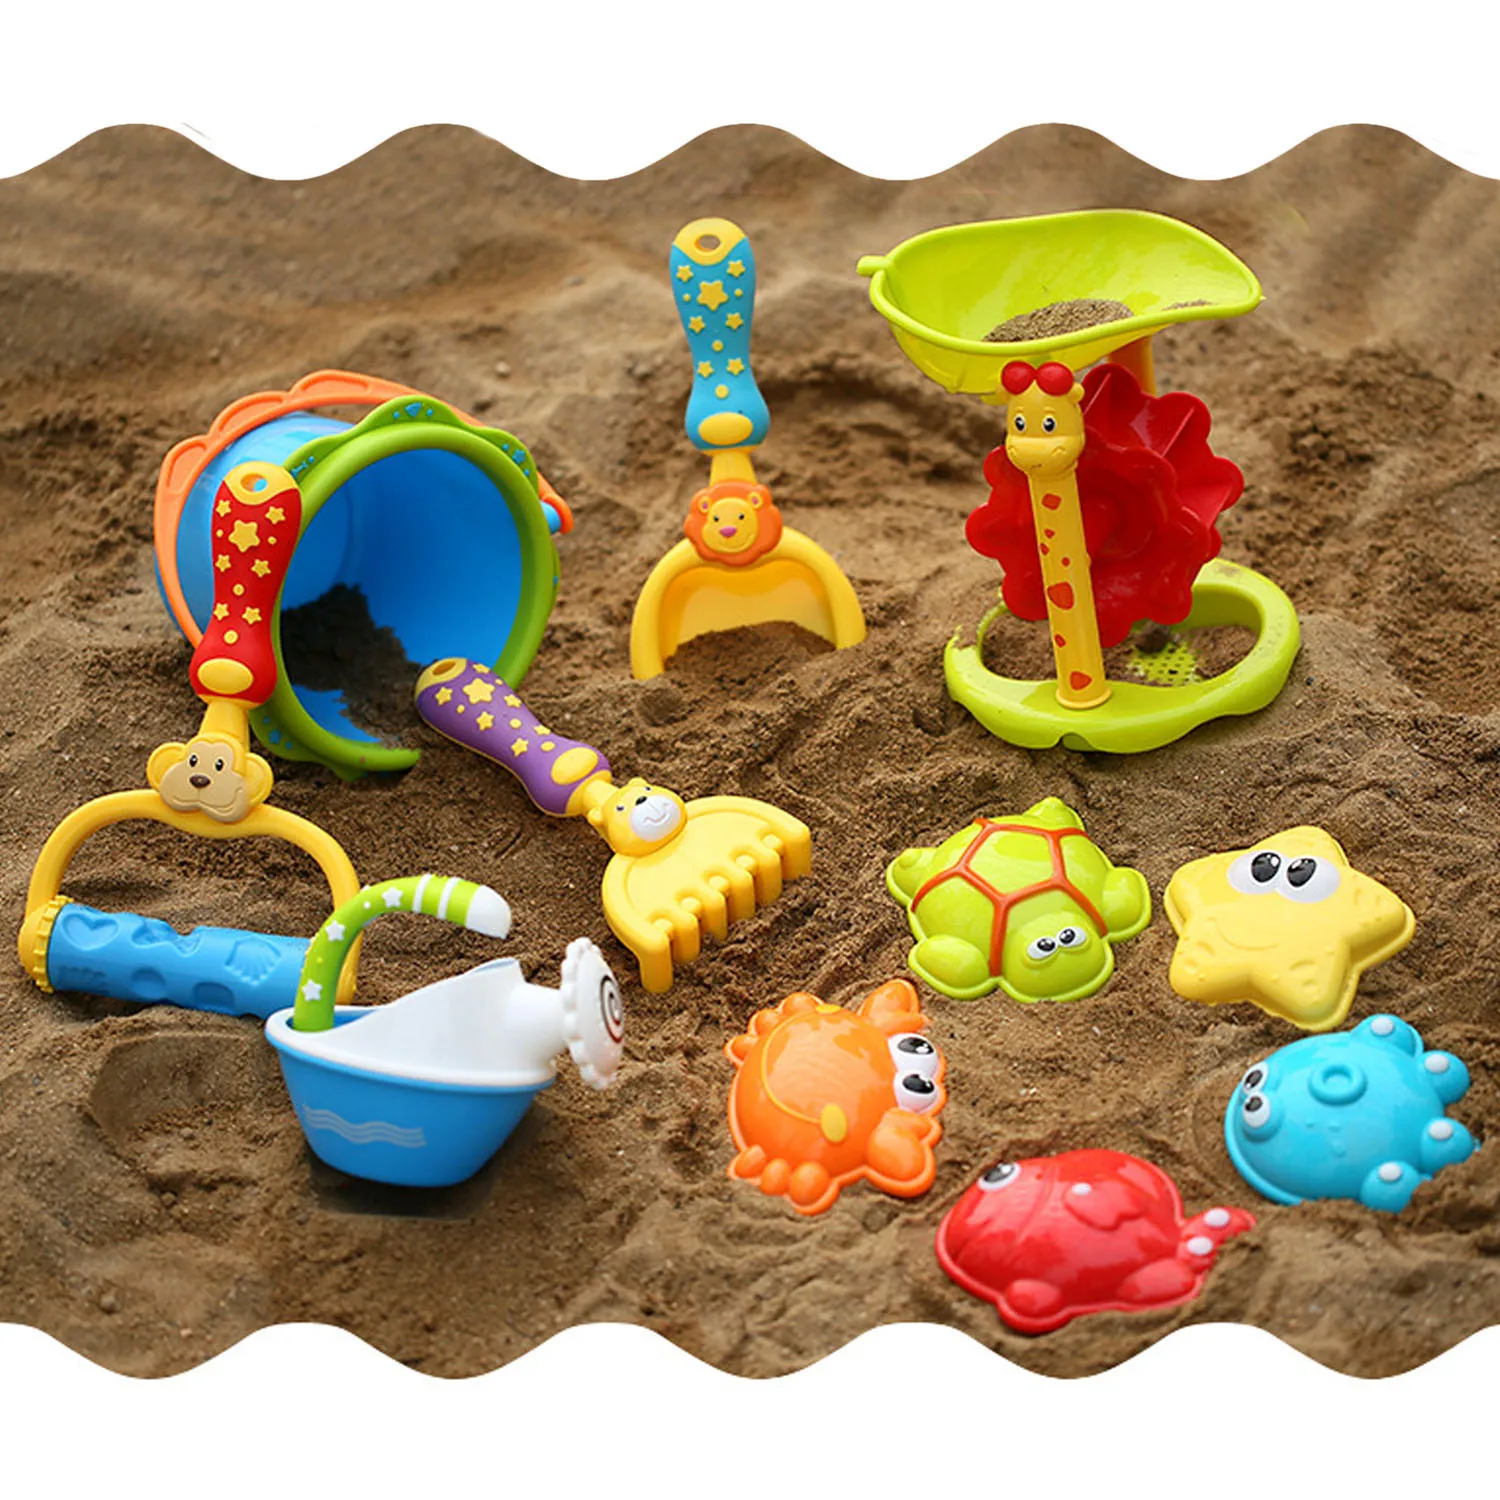 11 шт. забавные дети мультфильм животных пляж песок игрушки для песочницы в том числе лопаты грабли песочные часы ведро полива банка